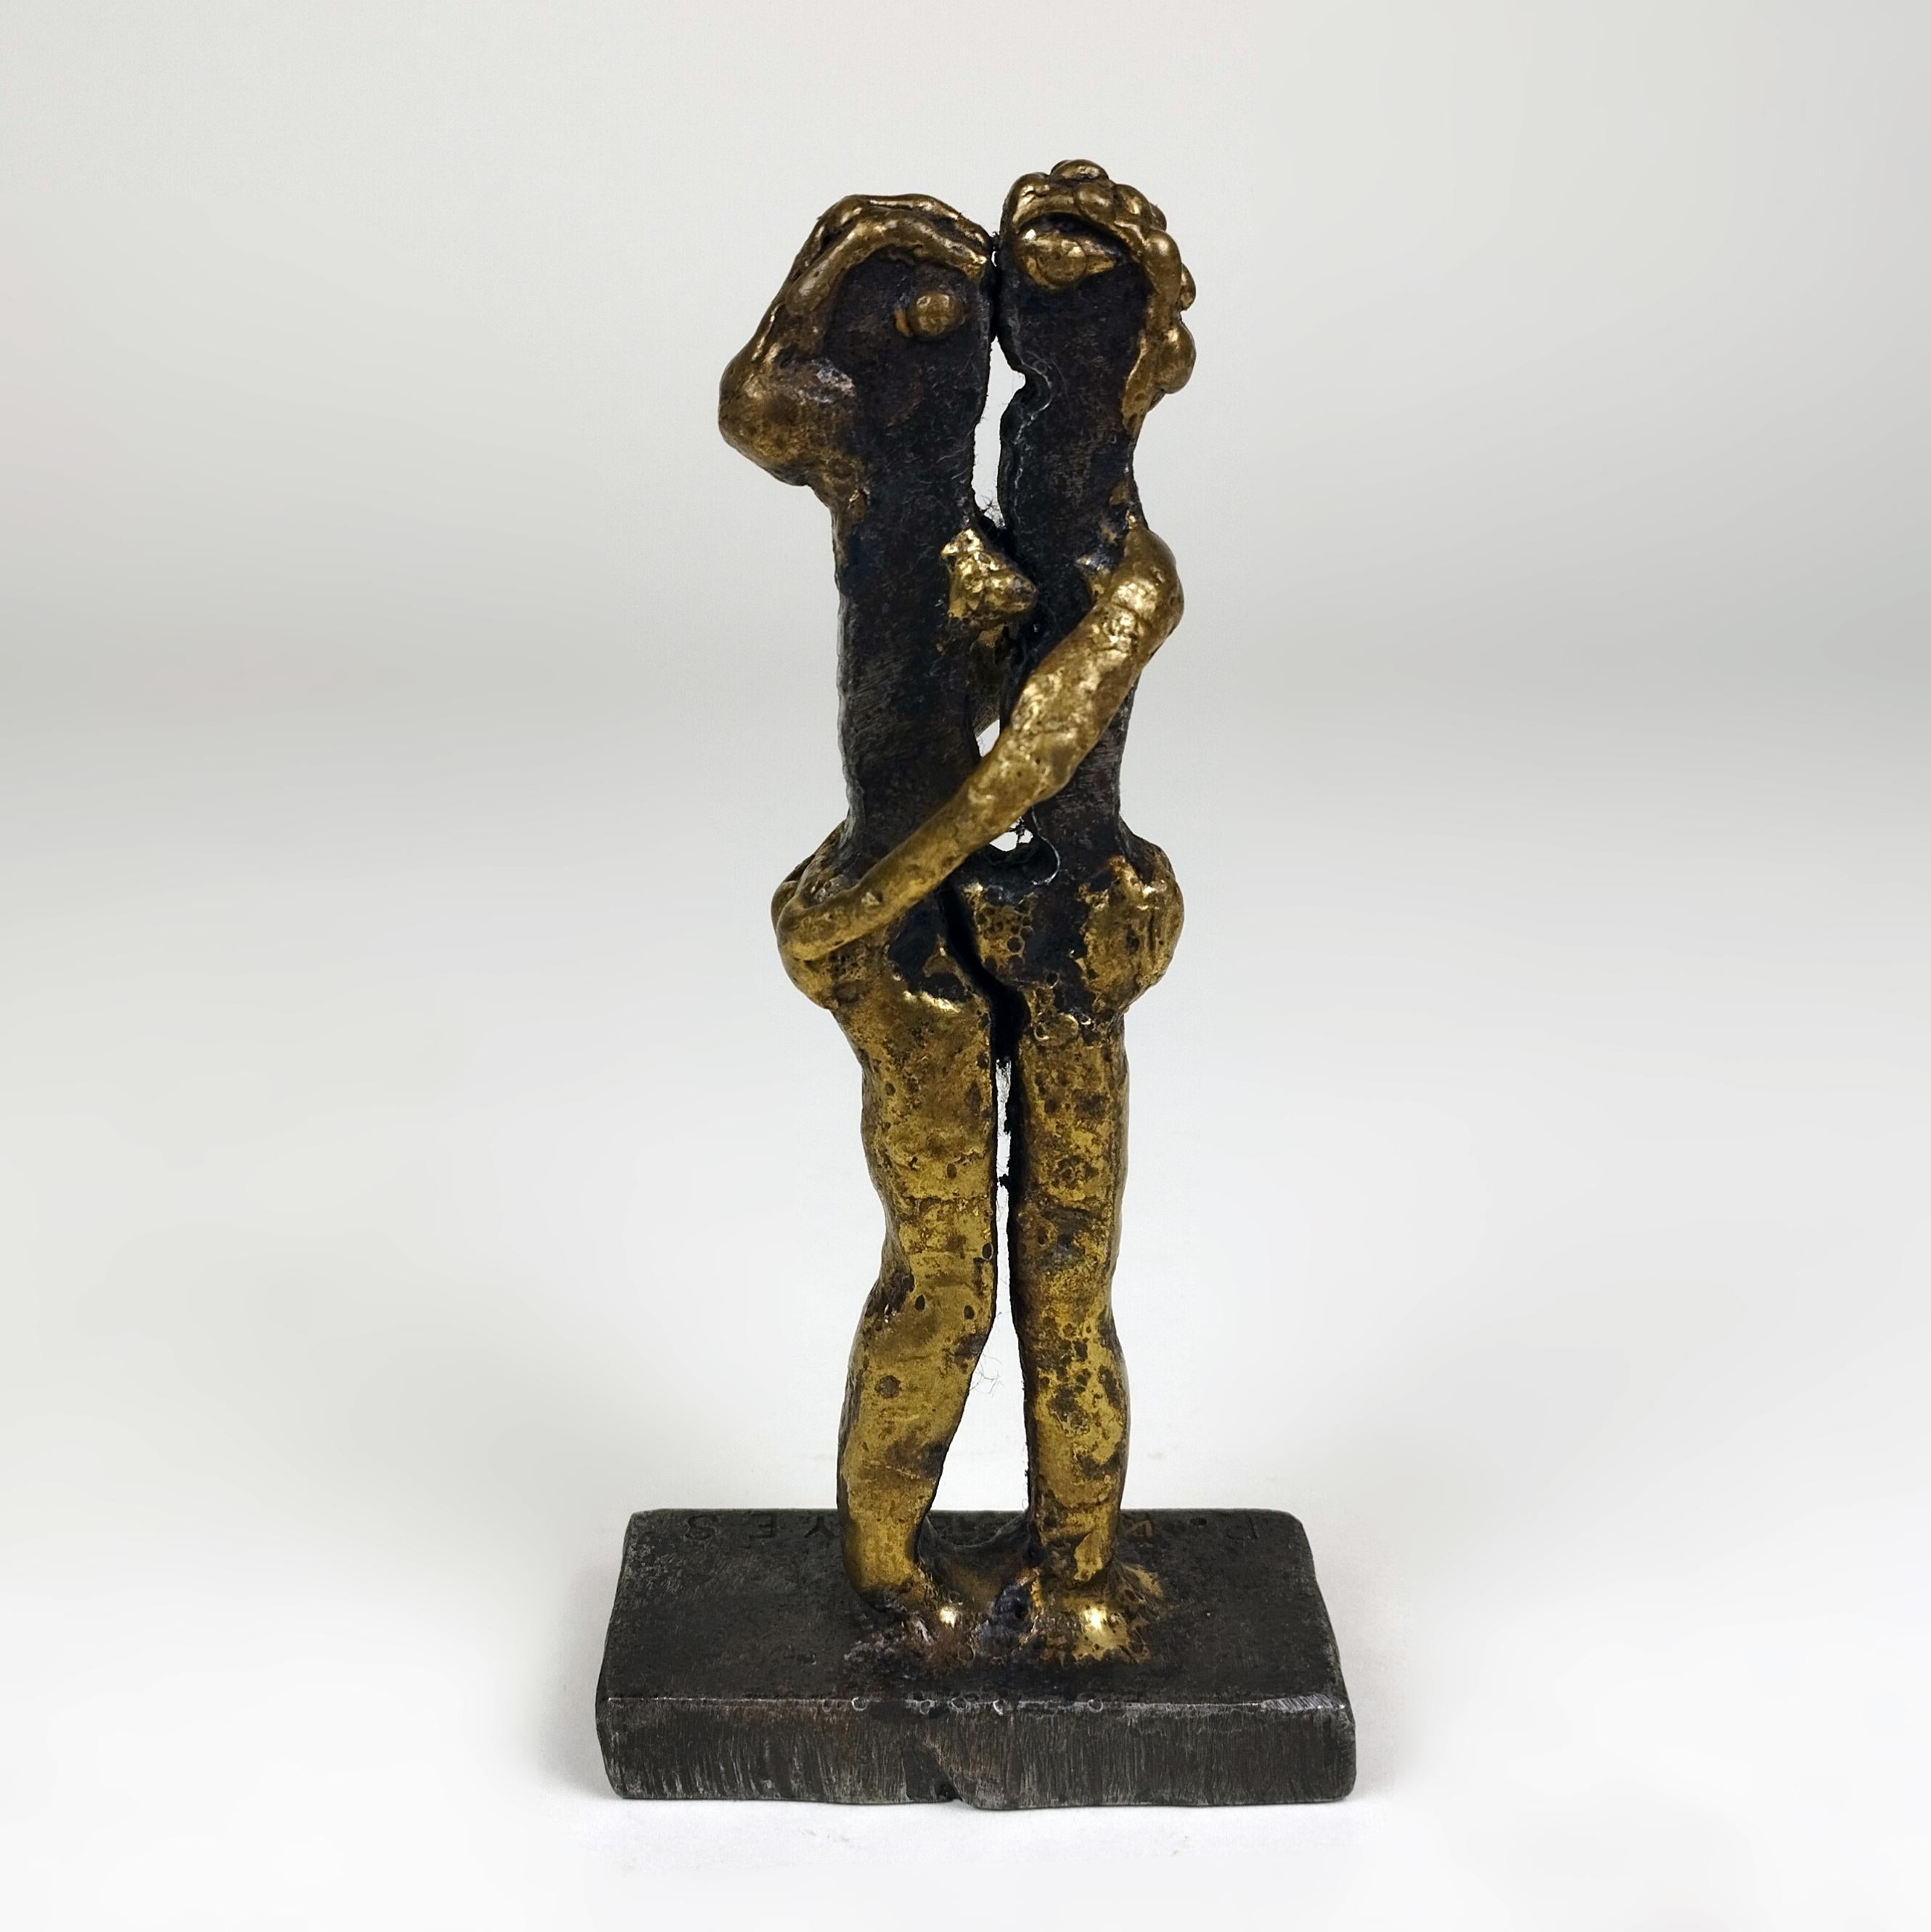 Une sculpture brutaliste en acier et en bronze fondu représentant un couple qui s'embrasse, réalisée par le sculpteur mexicain d'origine hongroise Pal Kepenyes. La sculpture est signée sur la base.

Sculpteur hongrois nationalisé mexicain, Pal